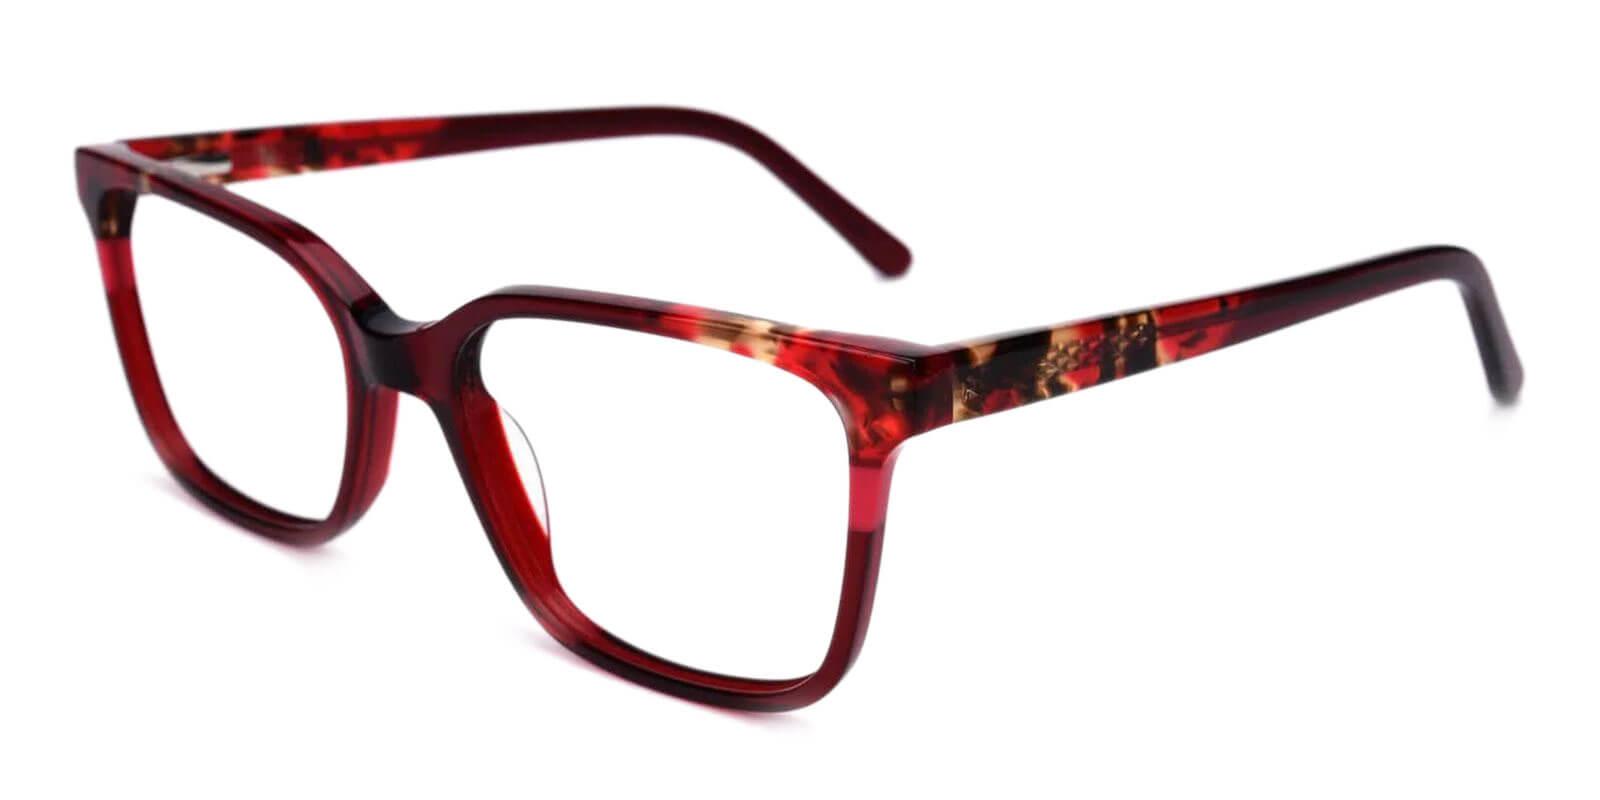 Mars Red Acetate Eyeglasses , UniversalBridgeFit Frames from ABBE Glasses